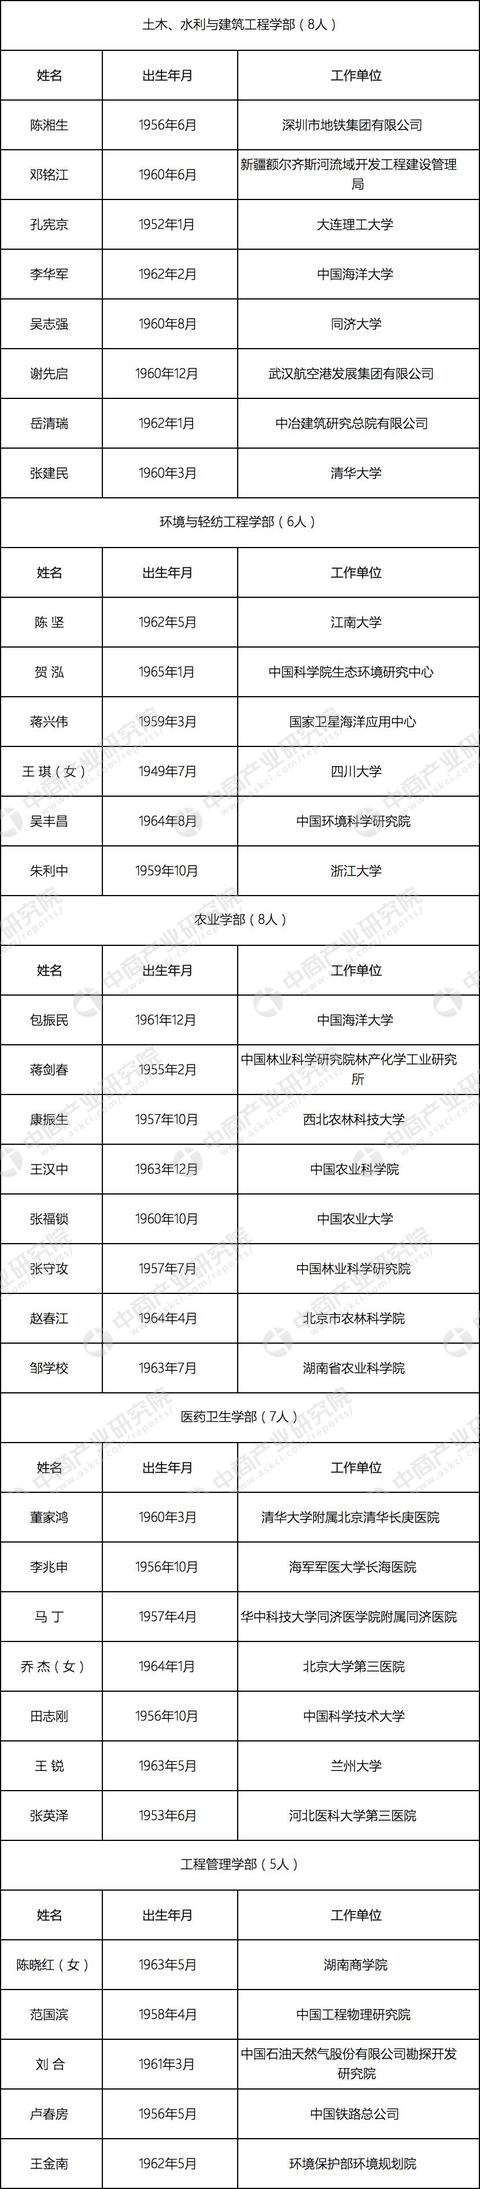 2017年中國高校新增工程院院士名單出爐，哈工大依然很強！